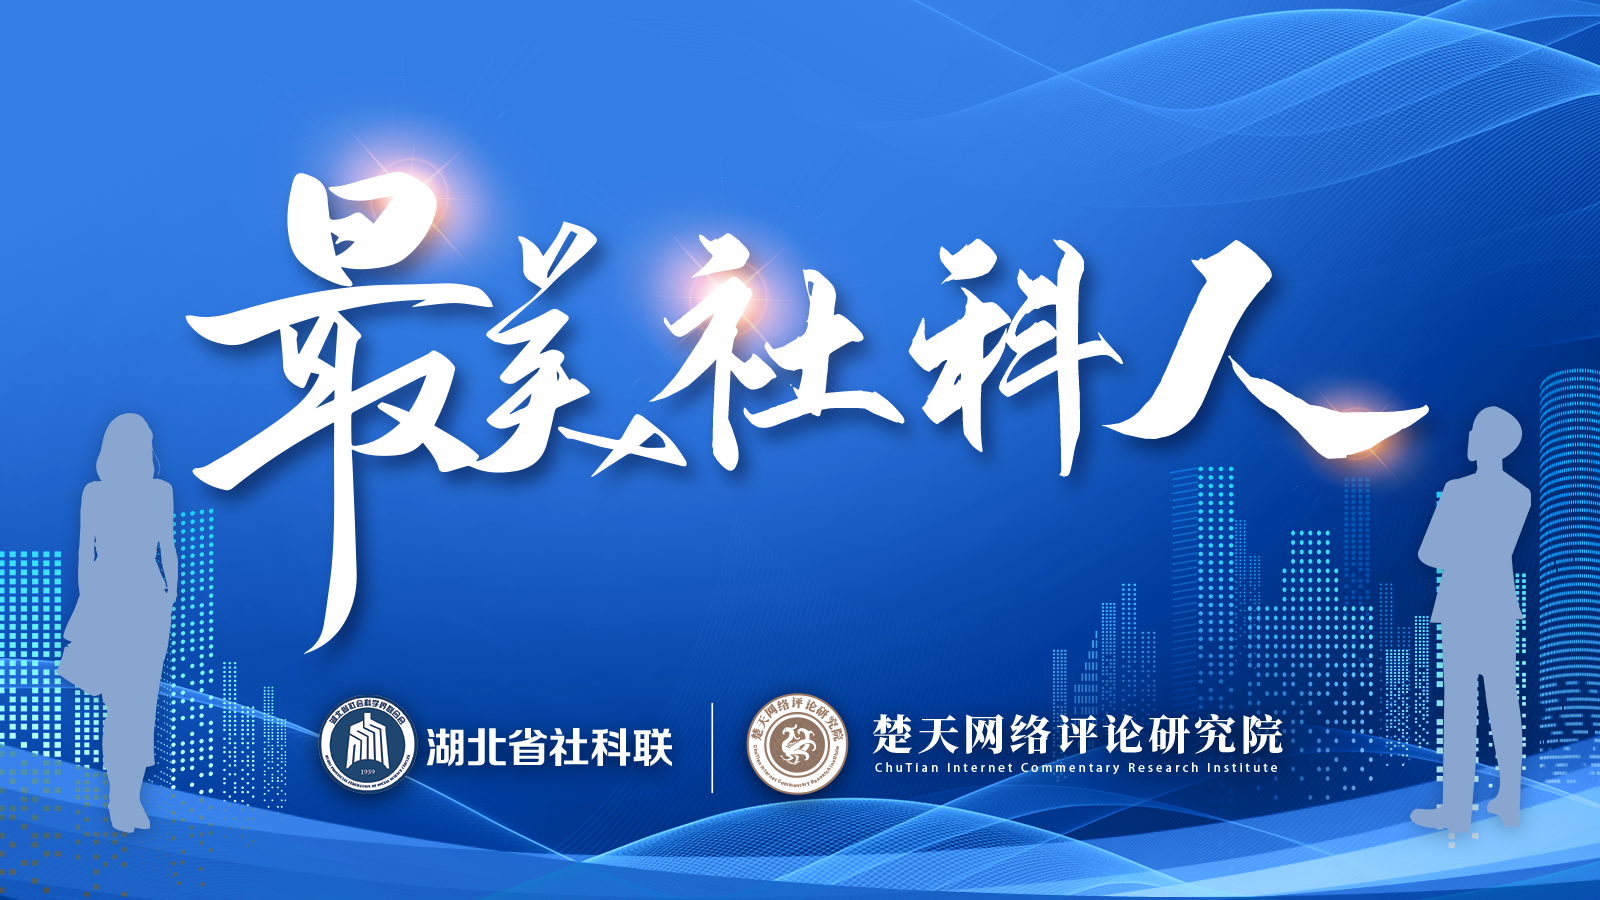 近日，湖北省社会科学界联合会印发通报，决定授予王雨辰等10名同志第三届“最美社科人”荣誉称号。